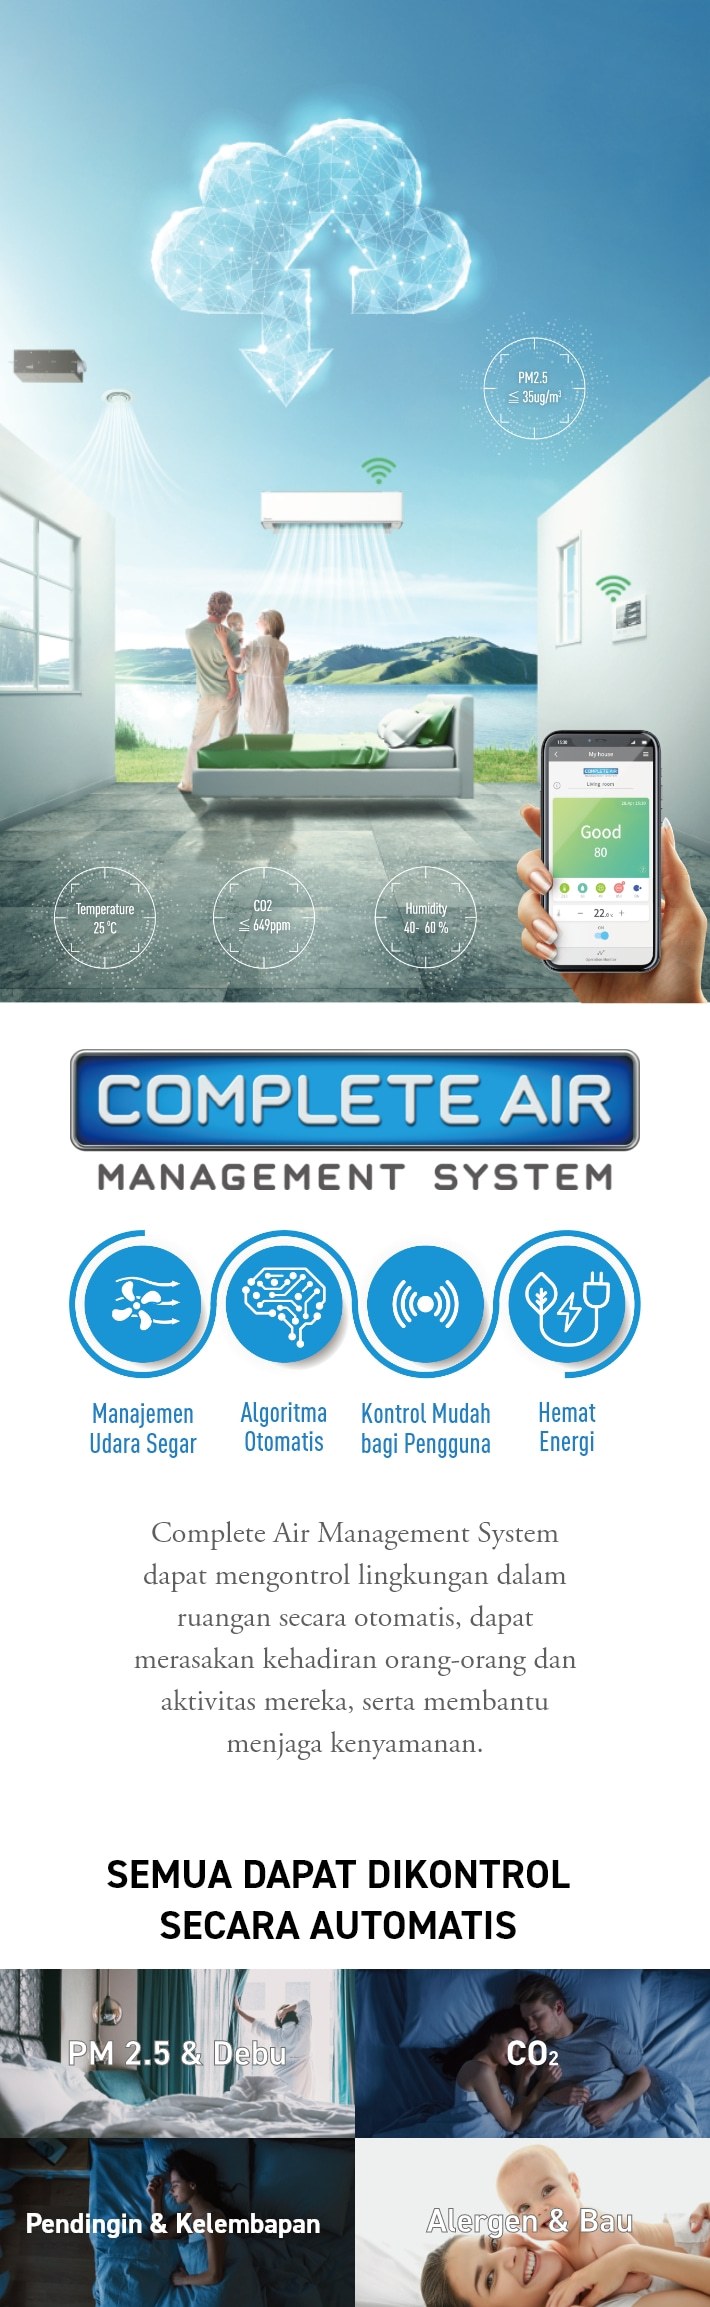 COMPLETE AIR MANAGEMENT SYSTEM Manajemen Udara Segar Algoritma Otomatis Kontrol Mudah bagi Pengguna Hemat Energi Complete Air Management System dapat mengontrol lingkungan dalam ruangan secara otomatis, dapat merasakan kehadiran orang-orang dan aktivitas mereka, serta membantu menjaga kenyamanan. SEMUA DAPAT DIKONTROL SECARA AUTOMATIS.PM 2.5 & Debu CO2 Pendingin & Kelembapan Alergen & Bau